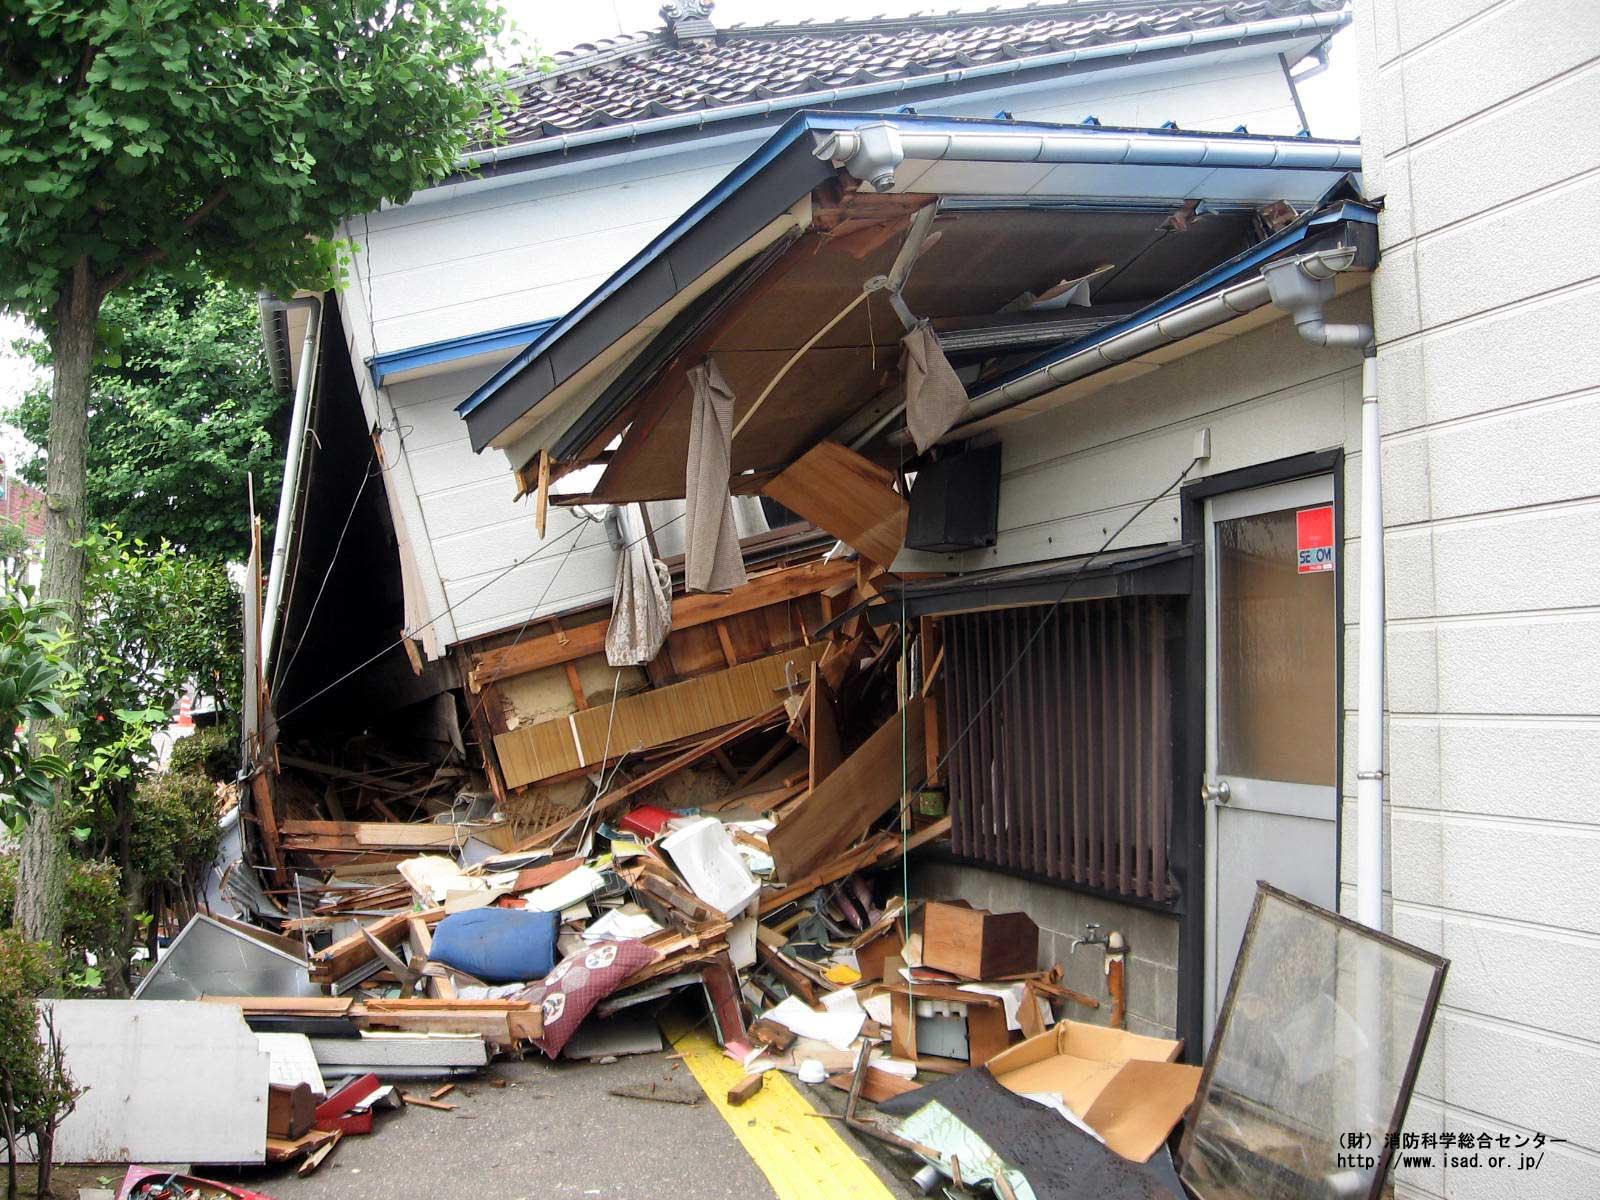 地震により1階部分が潰れ半壊した家を写した写真